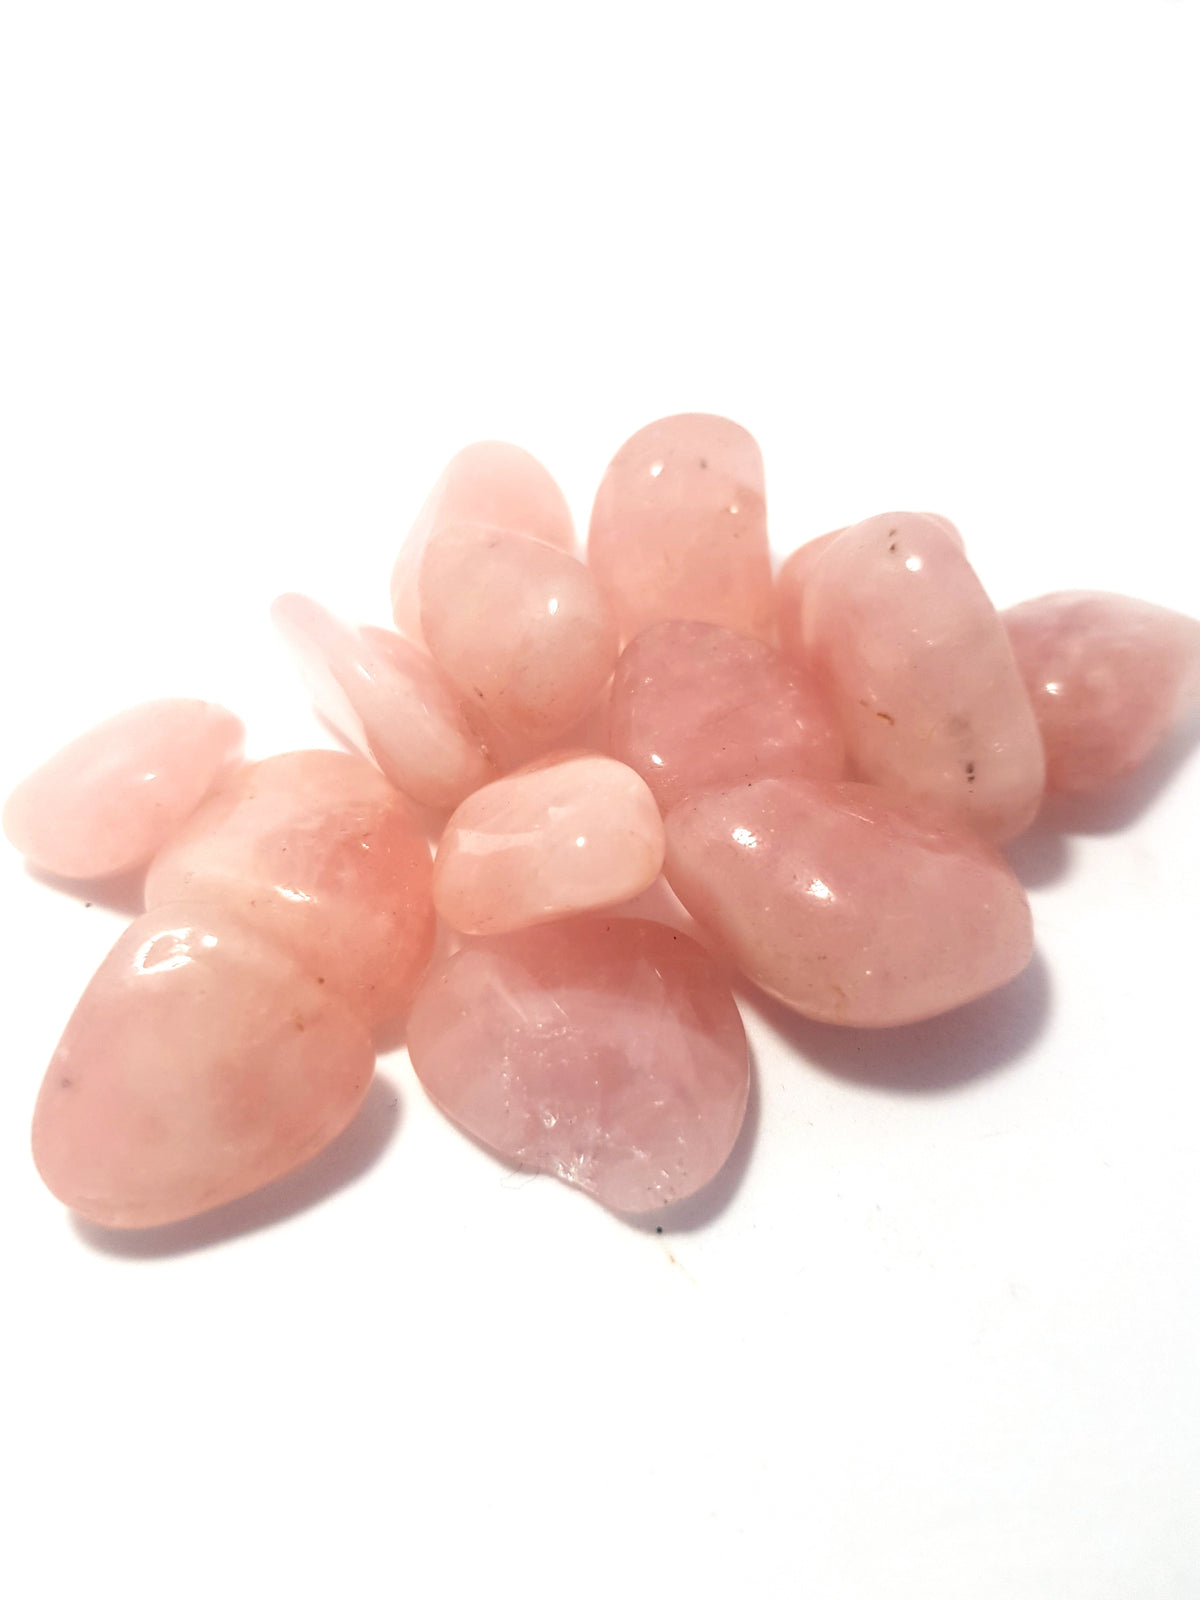 Rose quartz tumblestone